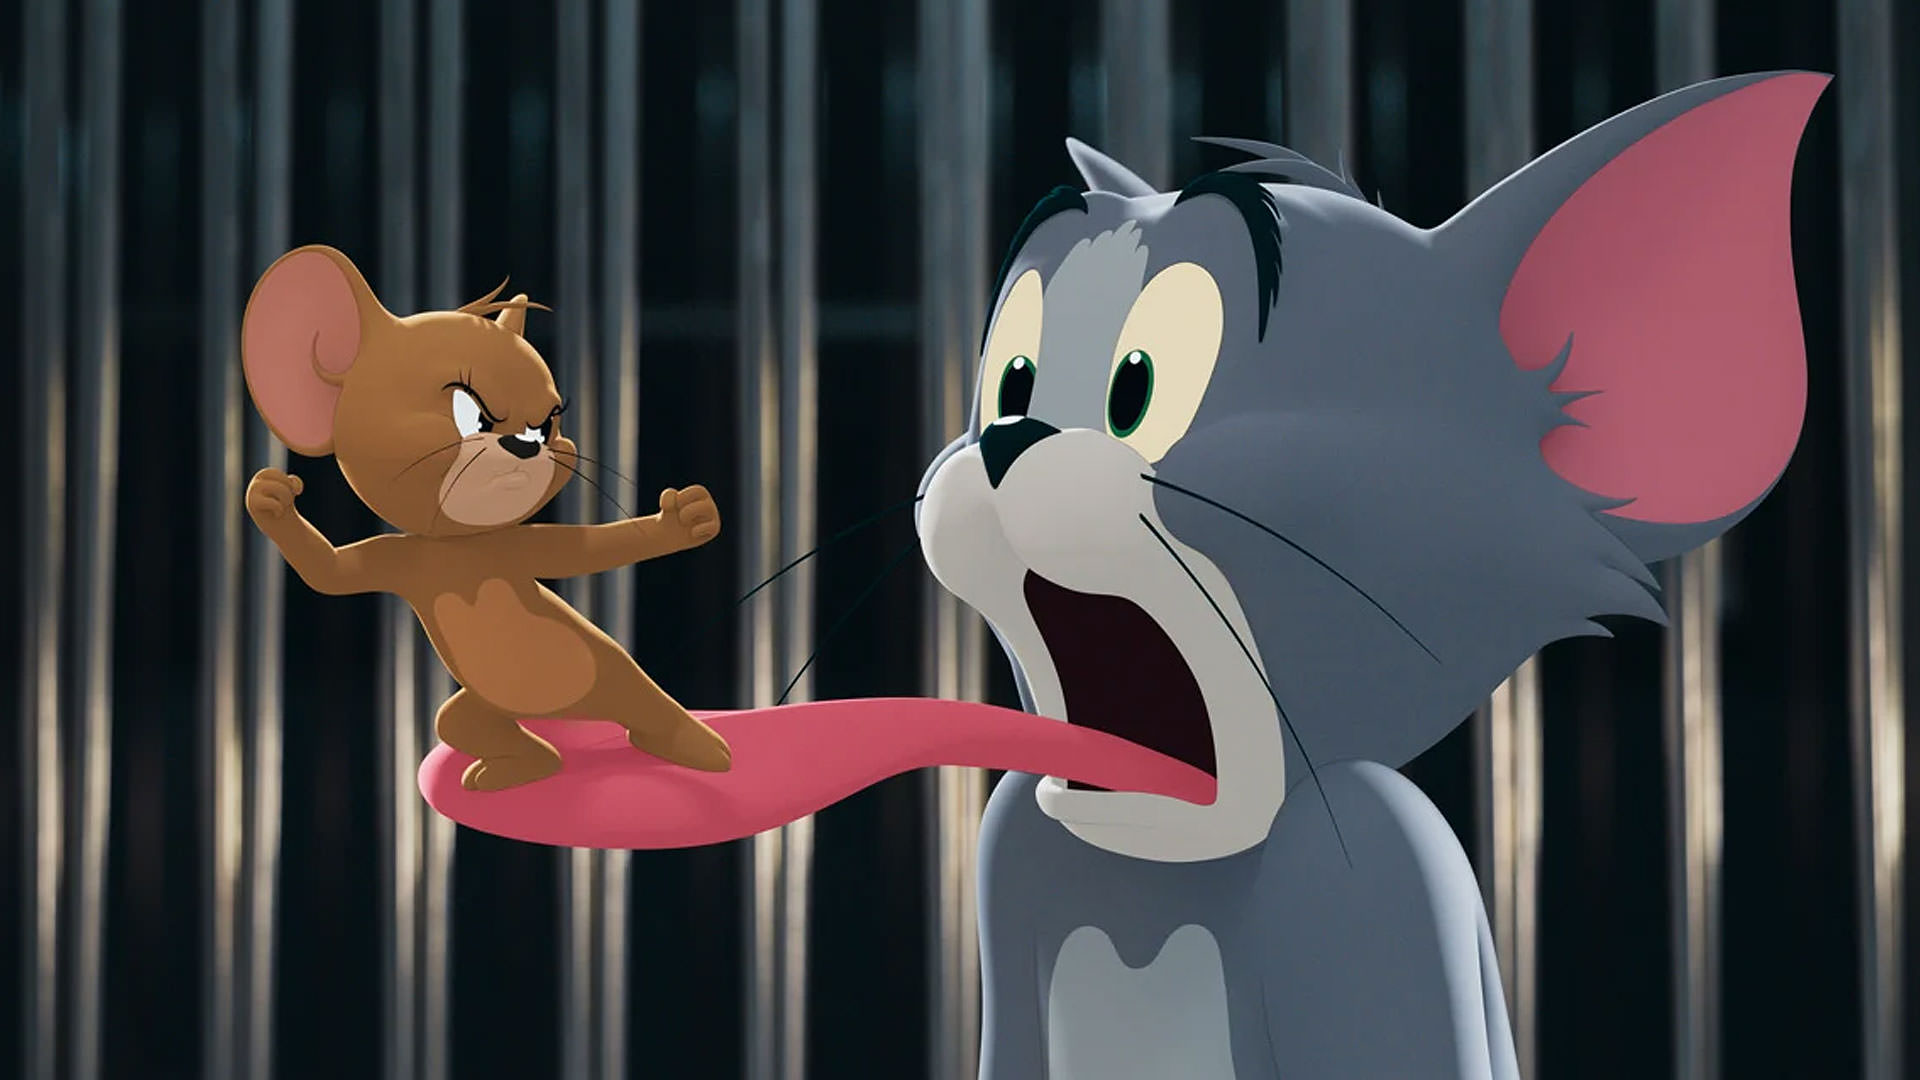 فیلم لایو اکشن Tom and Jerry با مشت زدن موش یعنی جری به صورت تام در حال ایستادن روی زبان گربه پشت میله ها